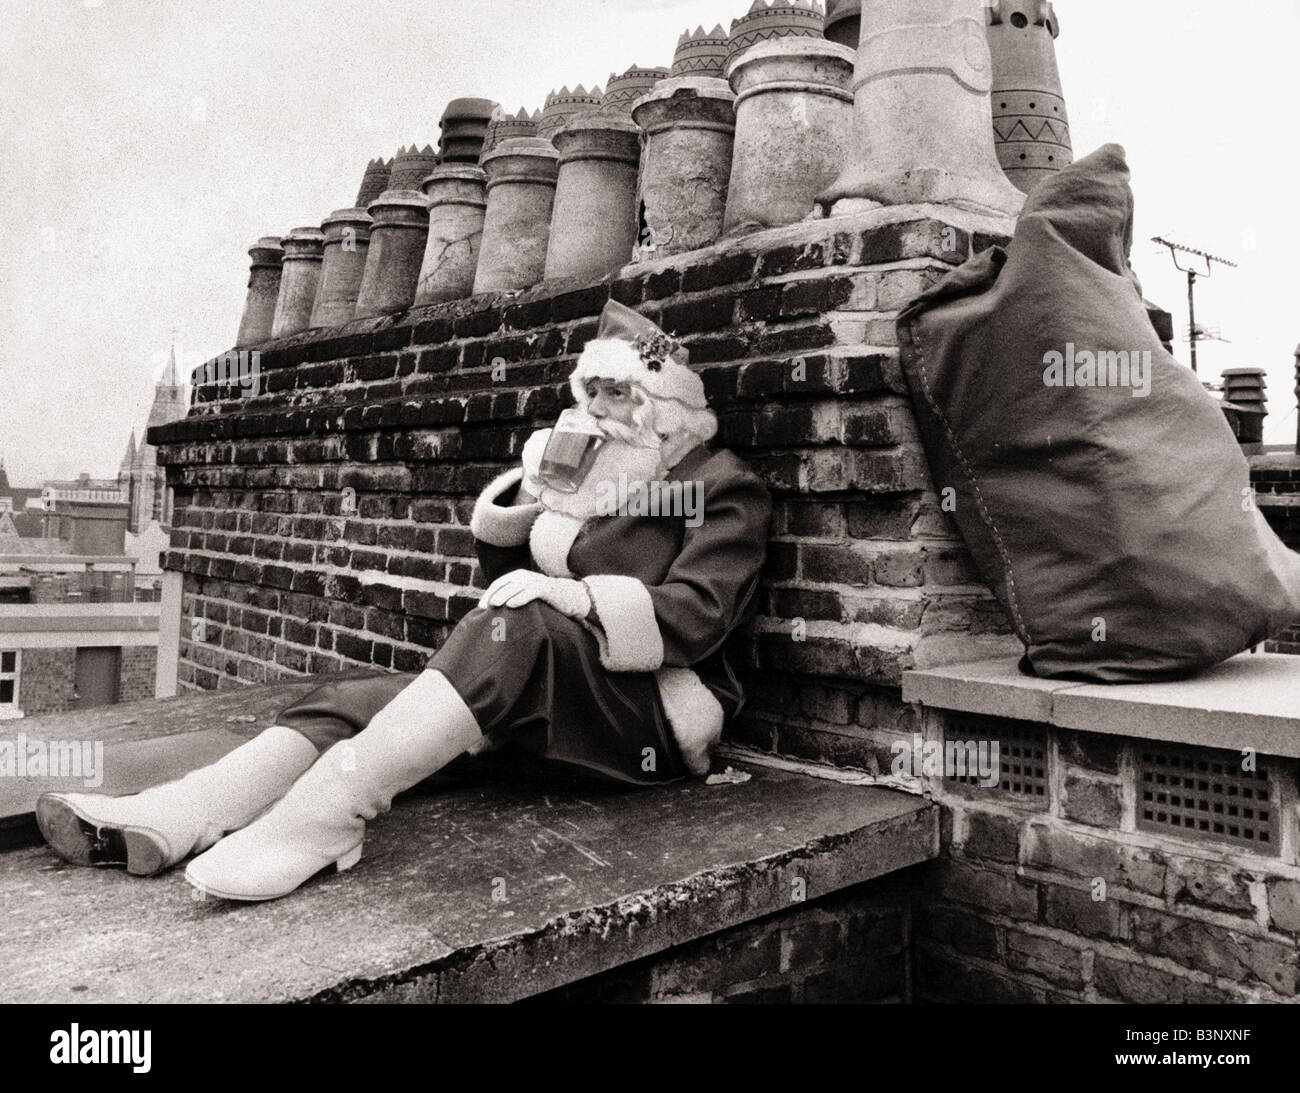 Vater Weihnachten Dezember 1986 versinkt Santa ein wohlverdientes Bier, als er nach einer Mitfahrgelegenheit nach Hause auf dem Dach des Stores Selfridges in London Weihnachtsmann Xmas Vater Weihnachten Weihnachten 1980er Jahren wartet Stockfoto